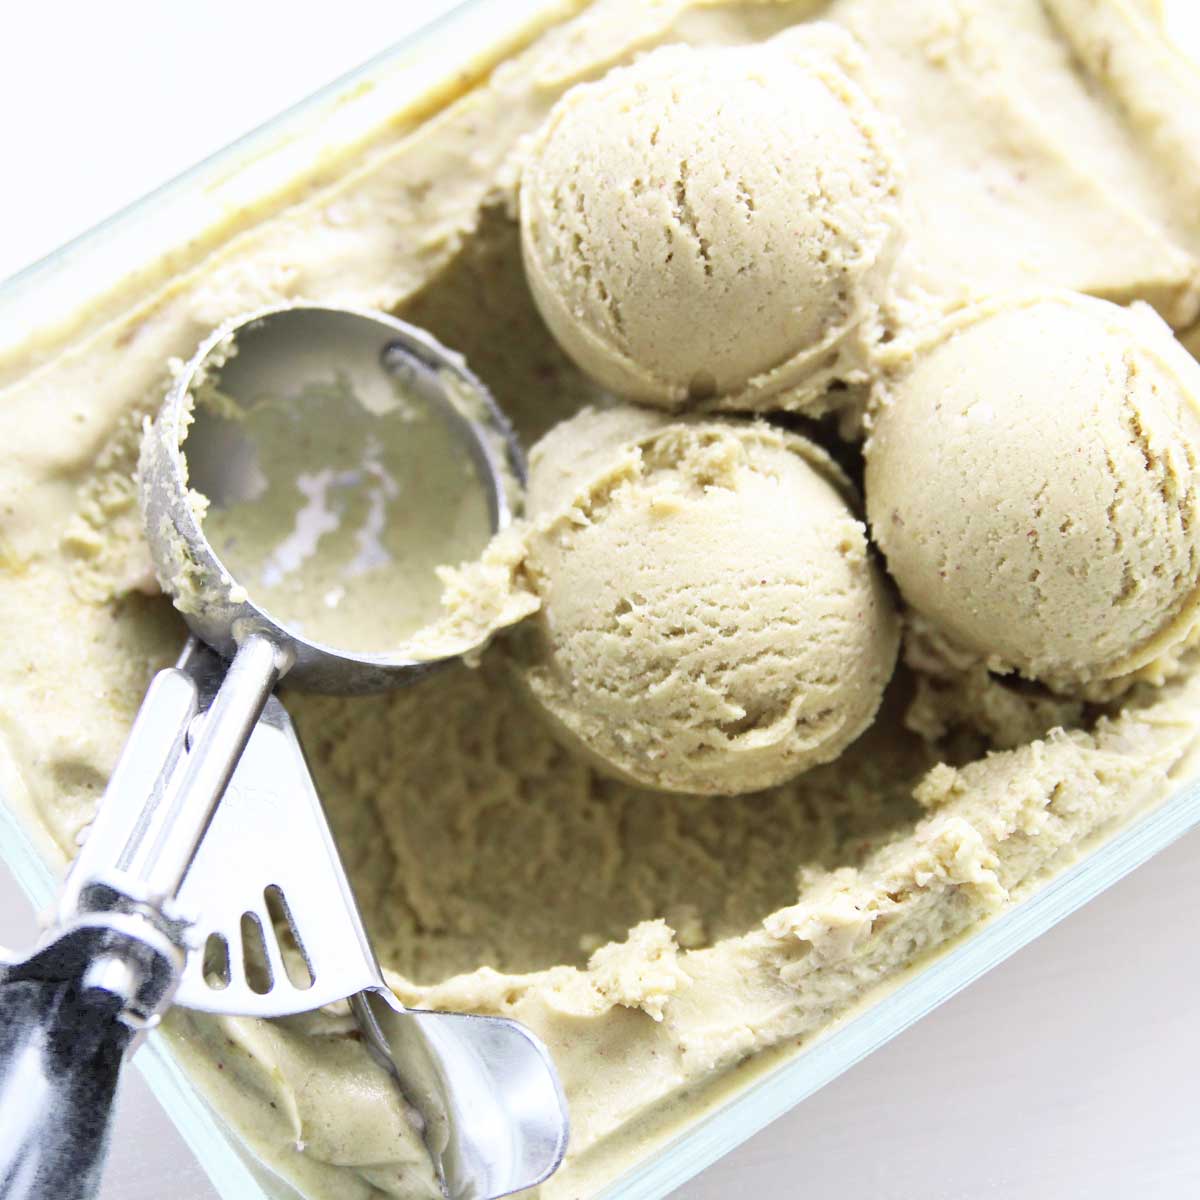 2 Ingredient Vegan Pistachio Nice Cream Recipe (No Dairy!) - Pistachio Nice Cream